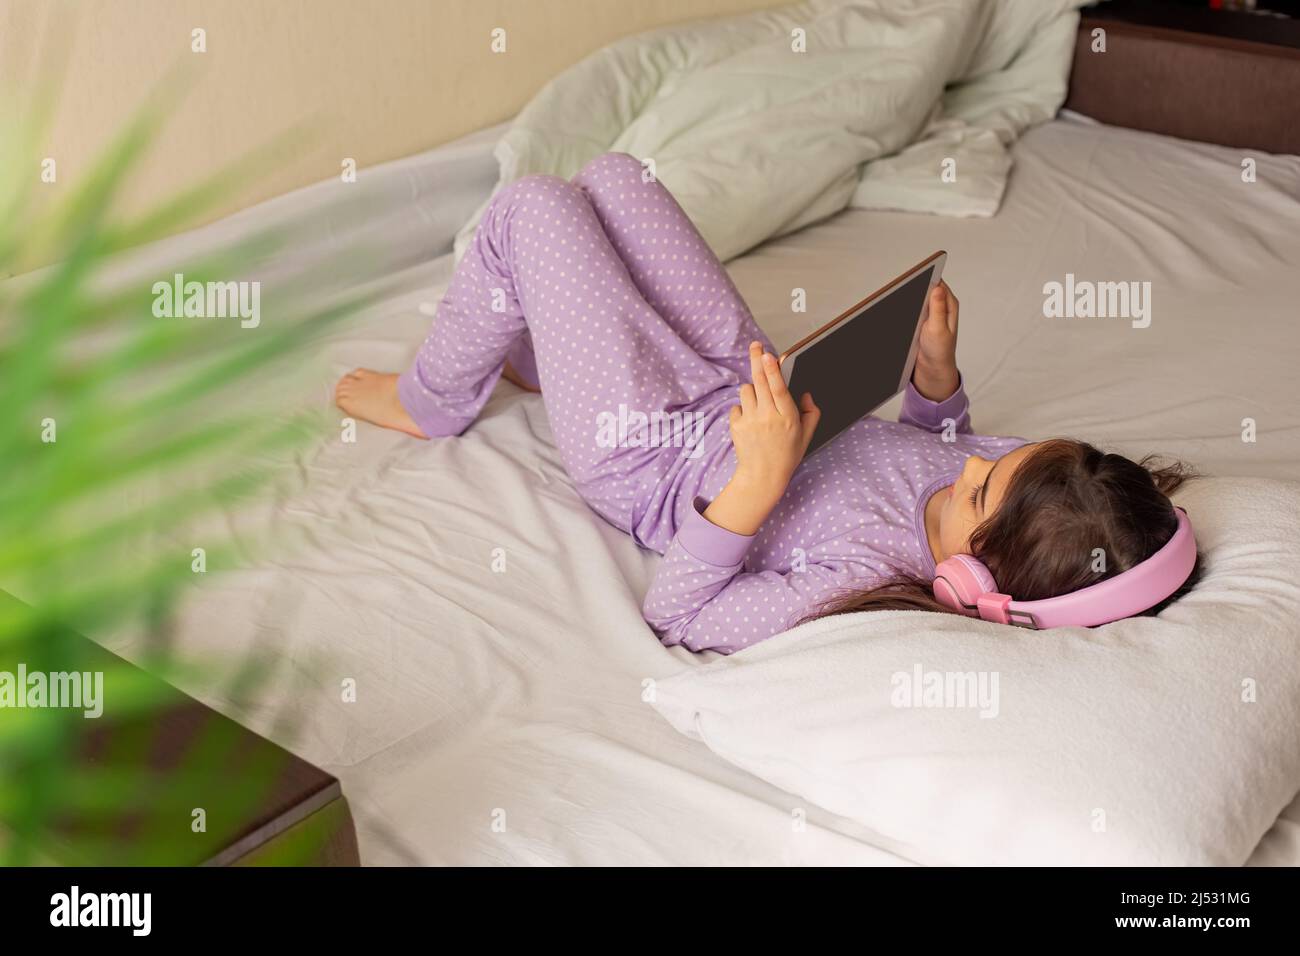 Una ragazza in pigiama viola, si trova su un letto bianco sulla schiena, tiene in mano un tablet digitale rosa. Foto Stock